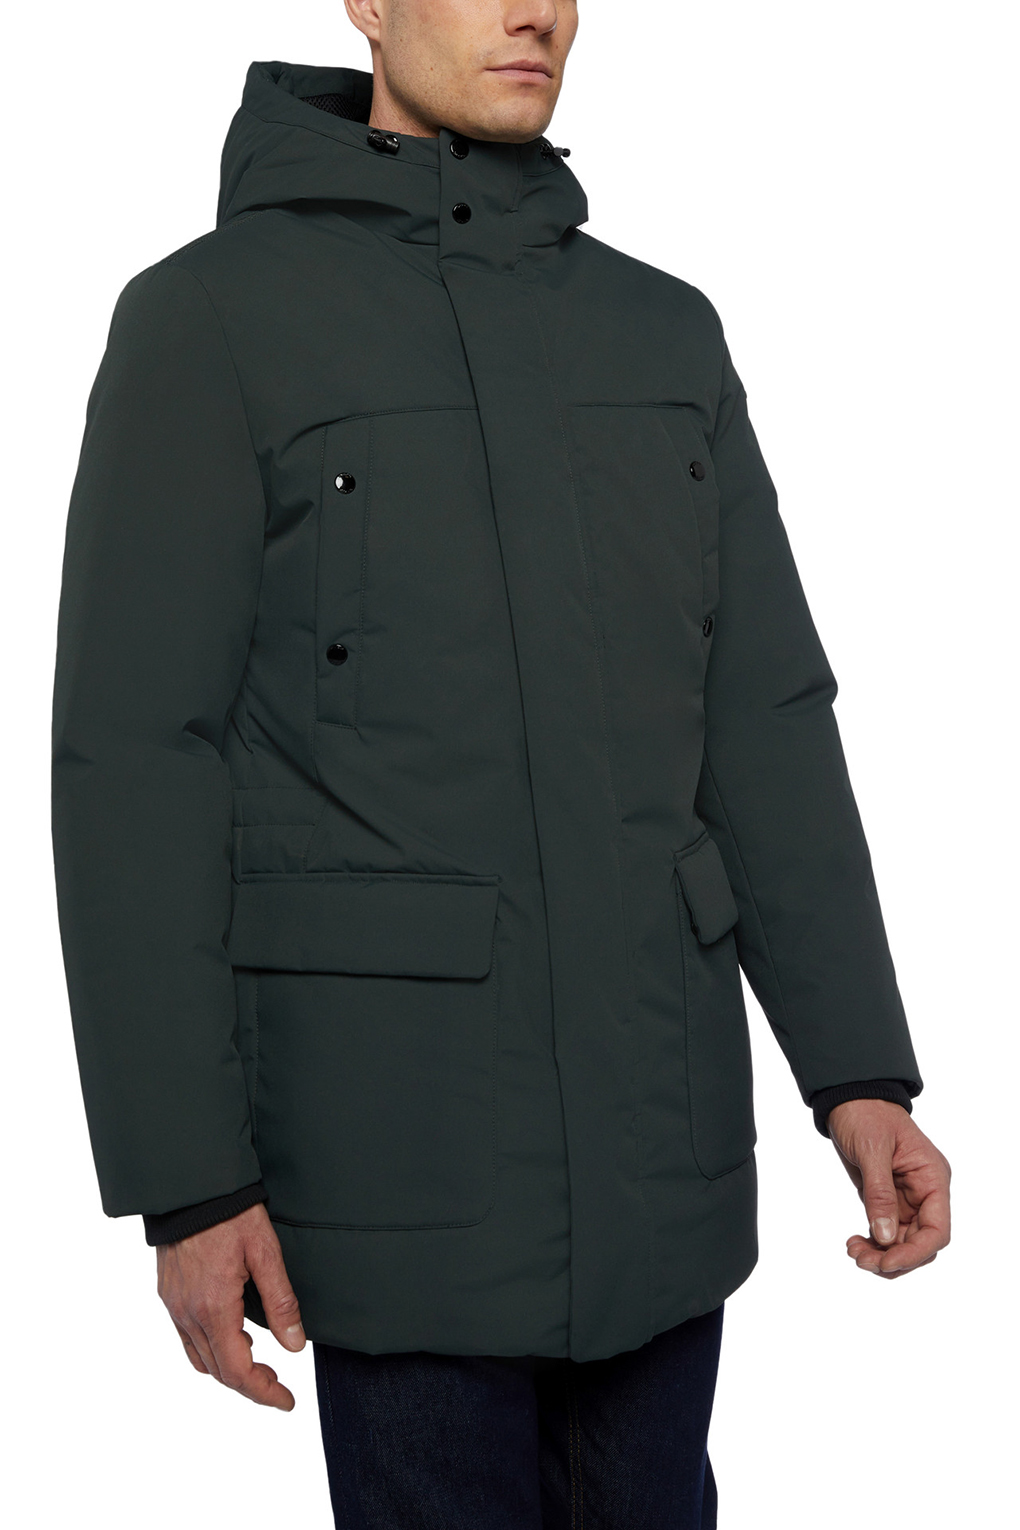 Куртка мужская GEOX M2629B T2953 серая 56 RU